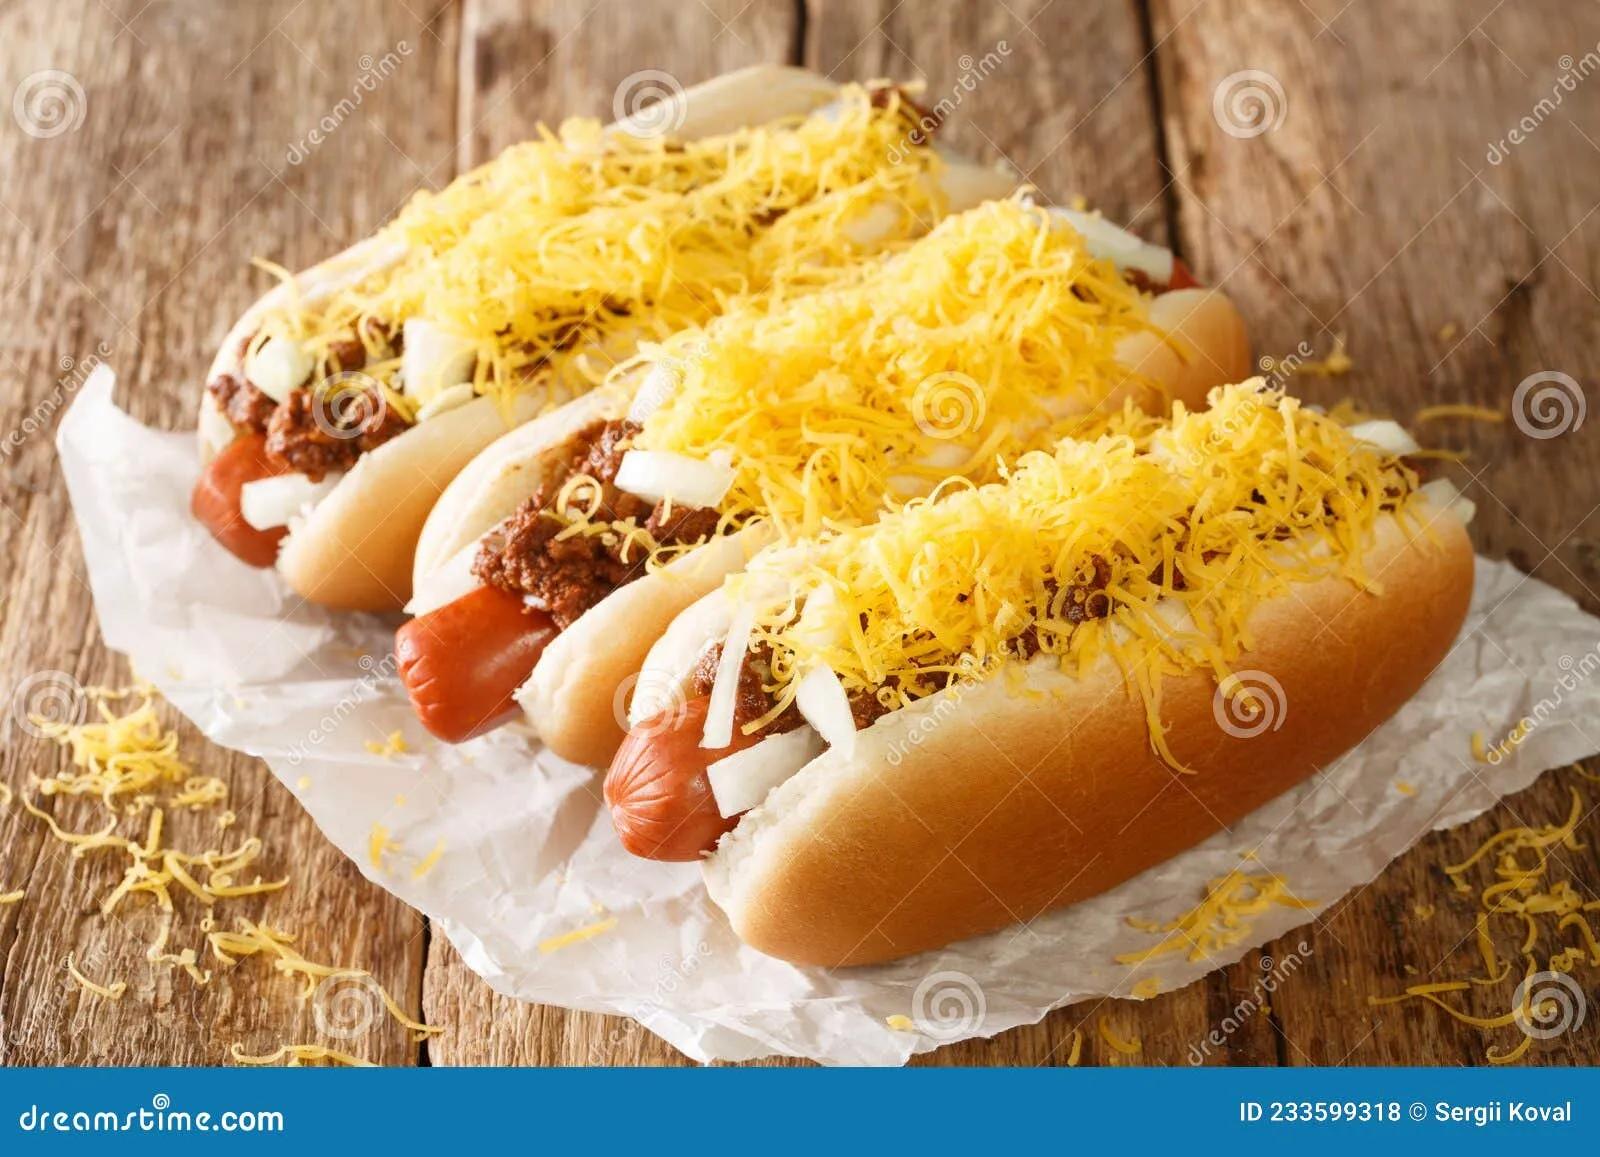 Amerikanische Chili Hot Dog Mit Rinderwurst Cheddar Käse Und Zwiebeln ...